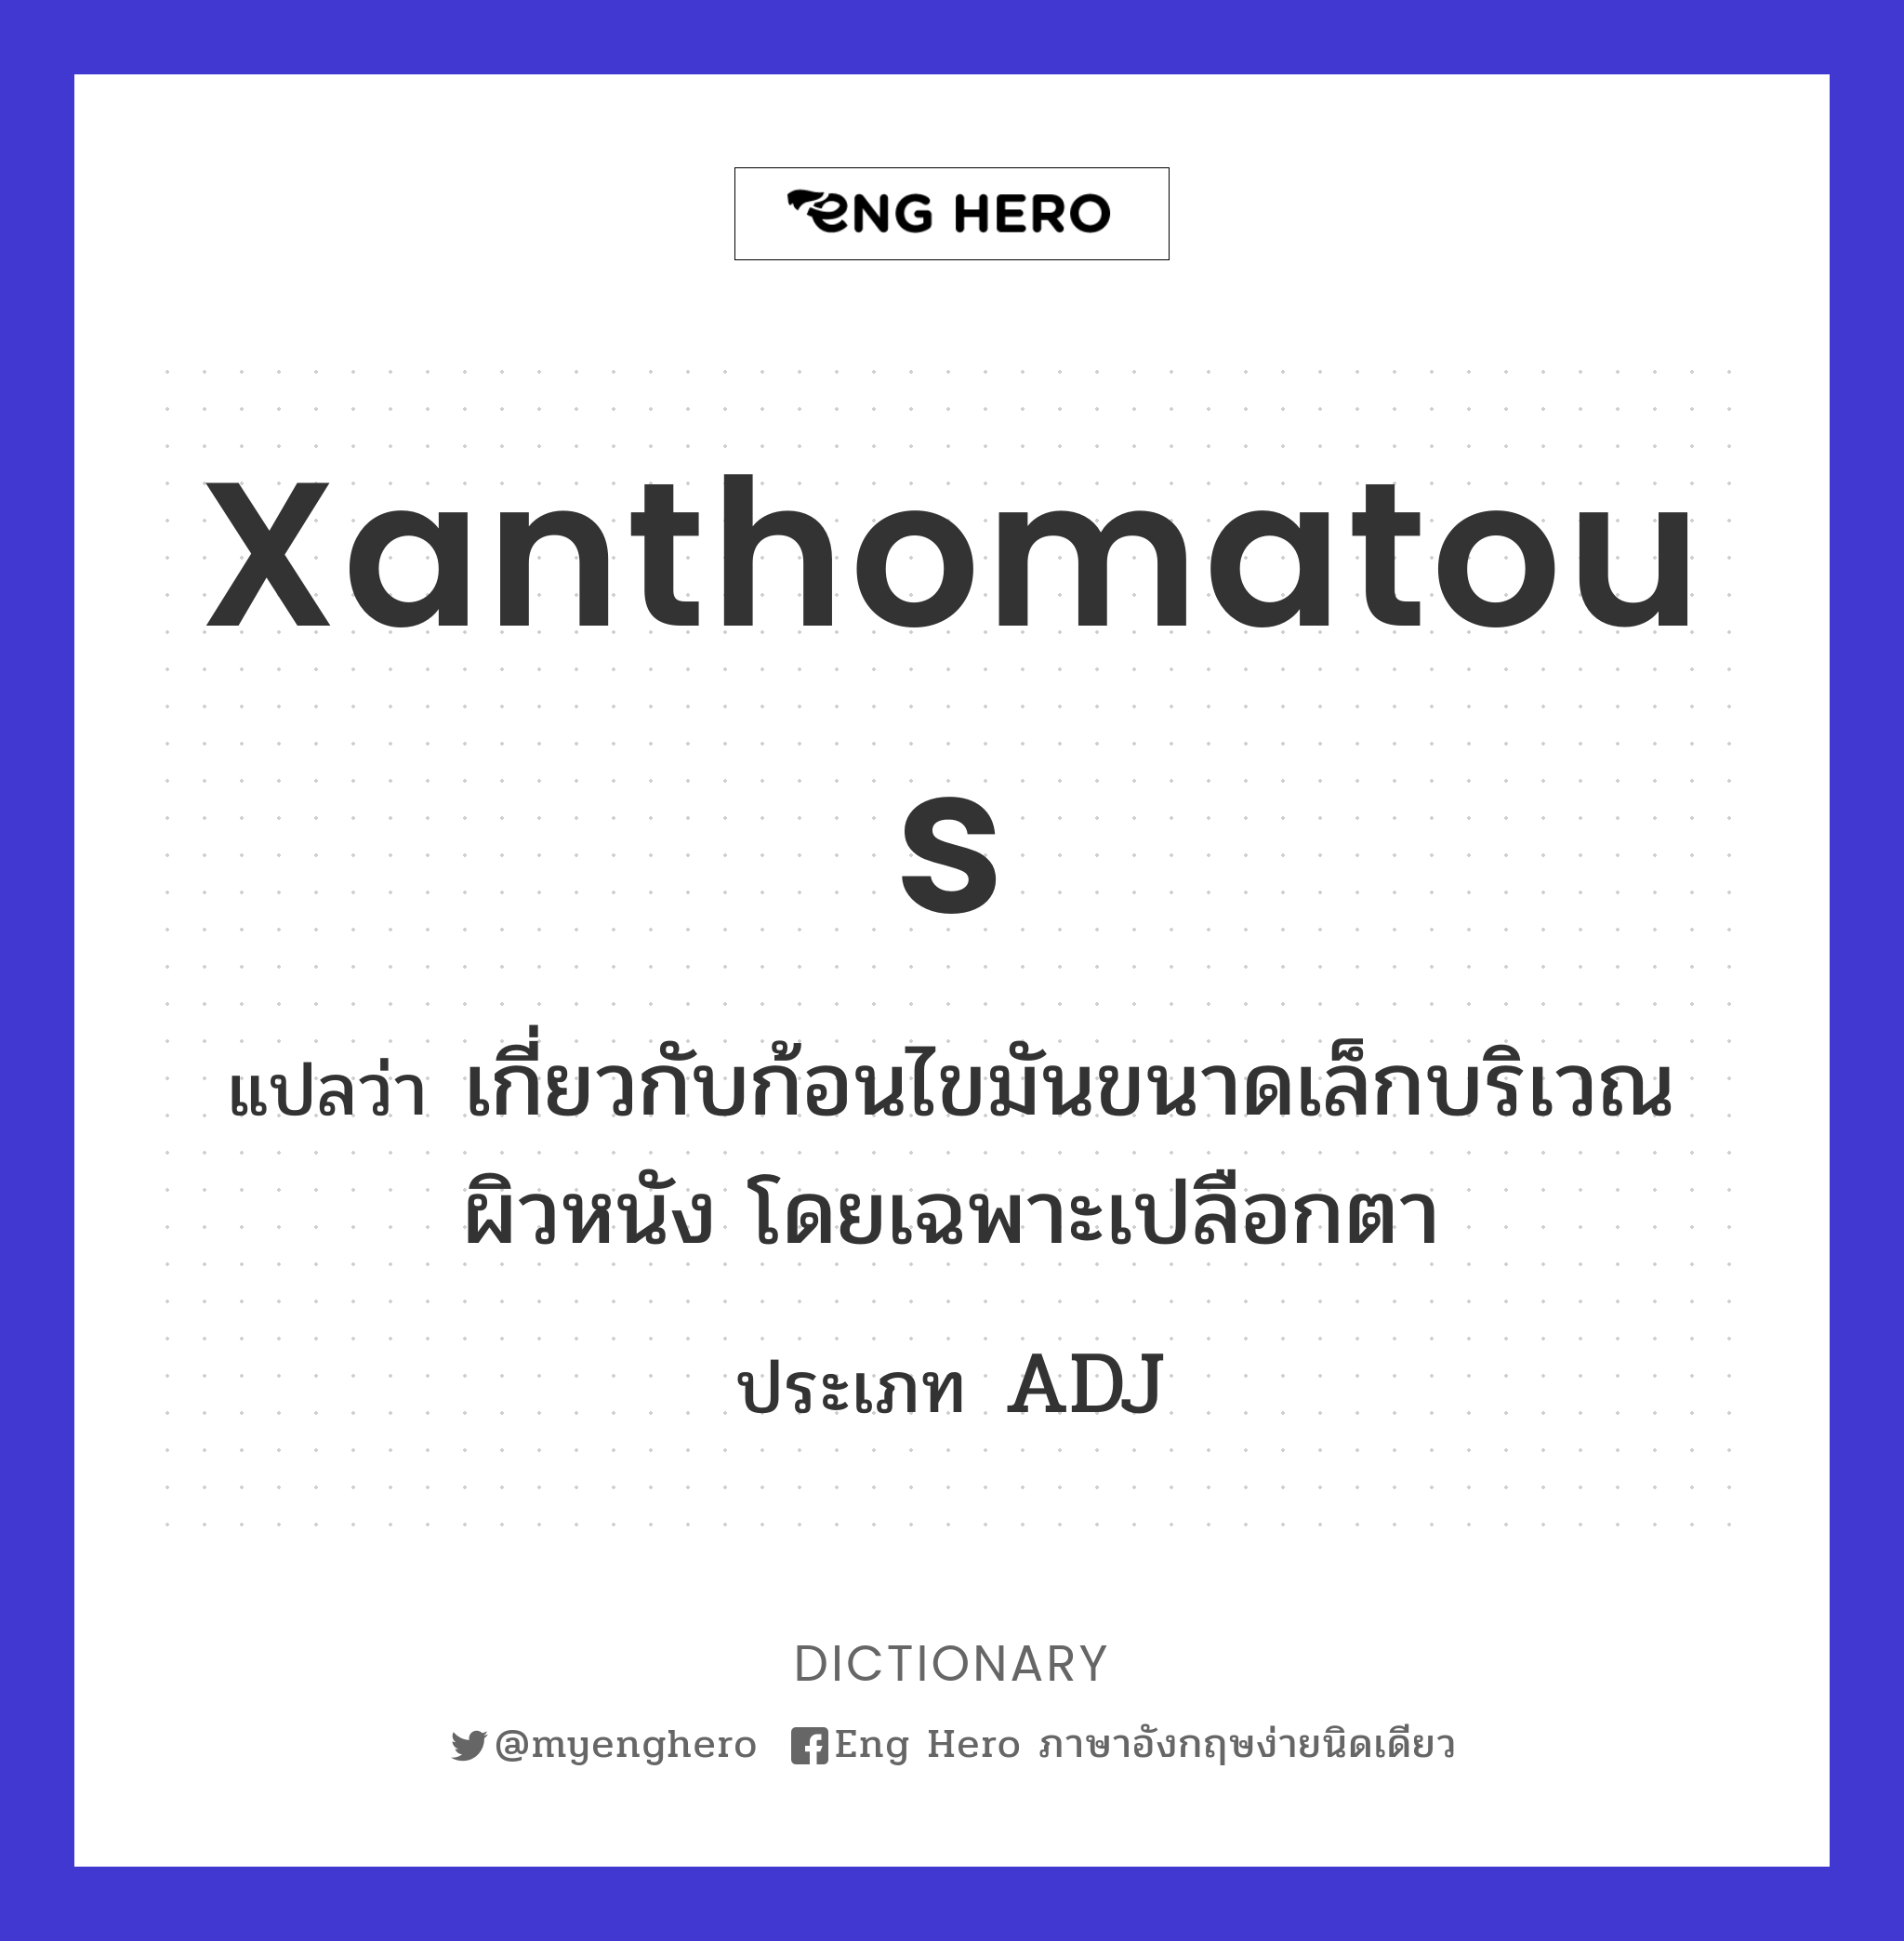 xanthomatous